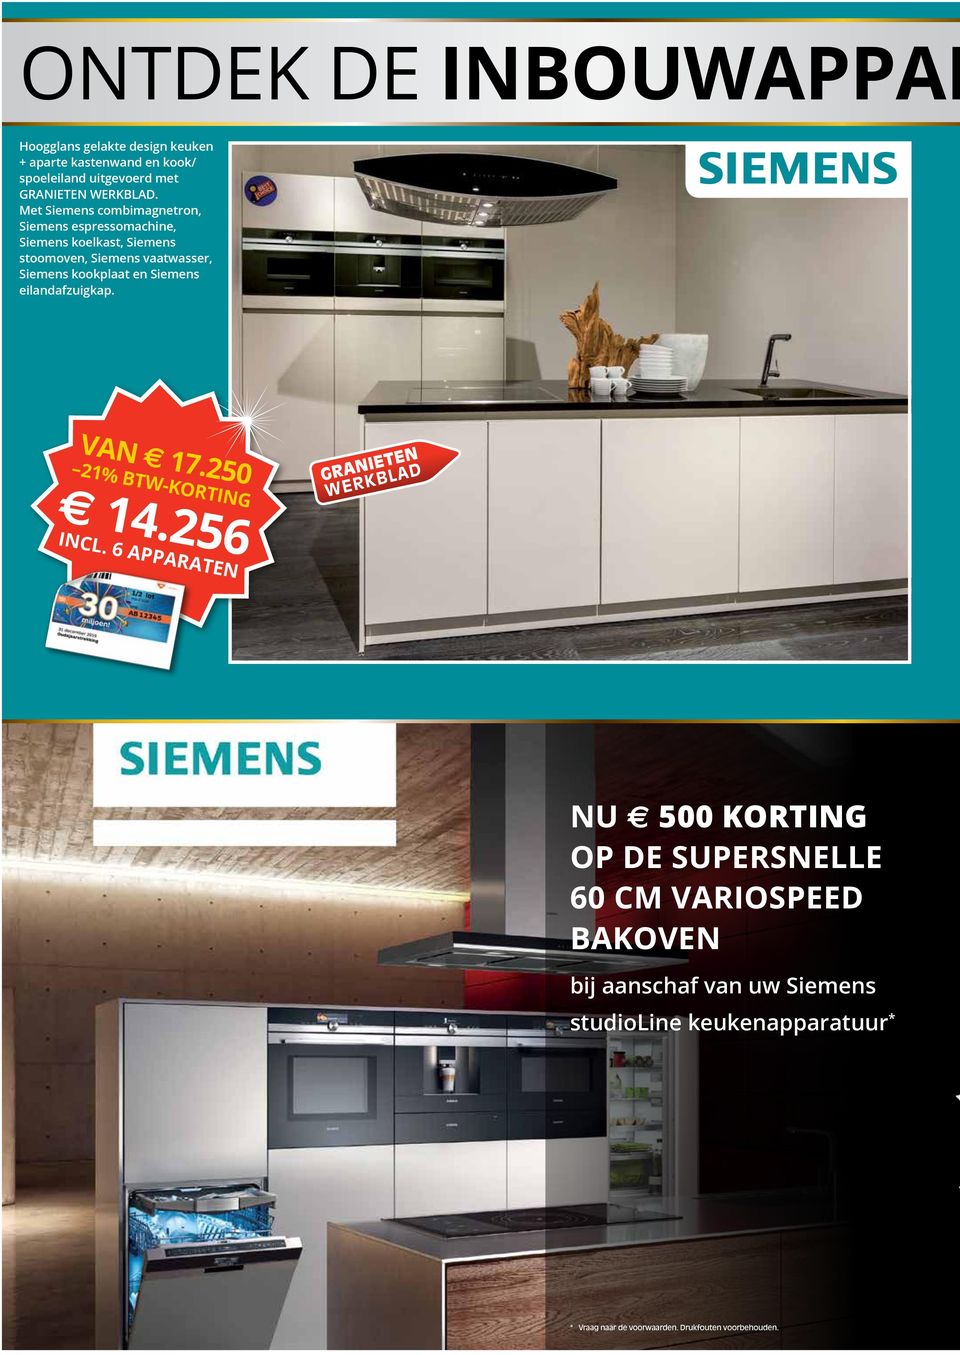 Met Siemens combimagnetron, Siemens espressomachine, Siemens koelkast, Siemens stoomoven, Siemens vaatwasser, Siemens